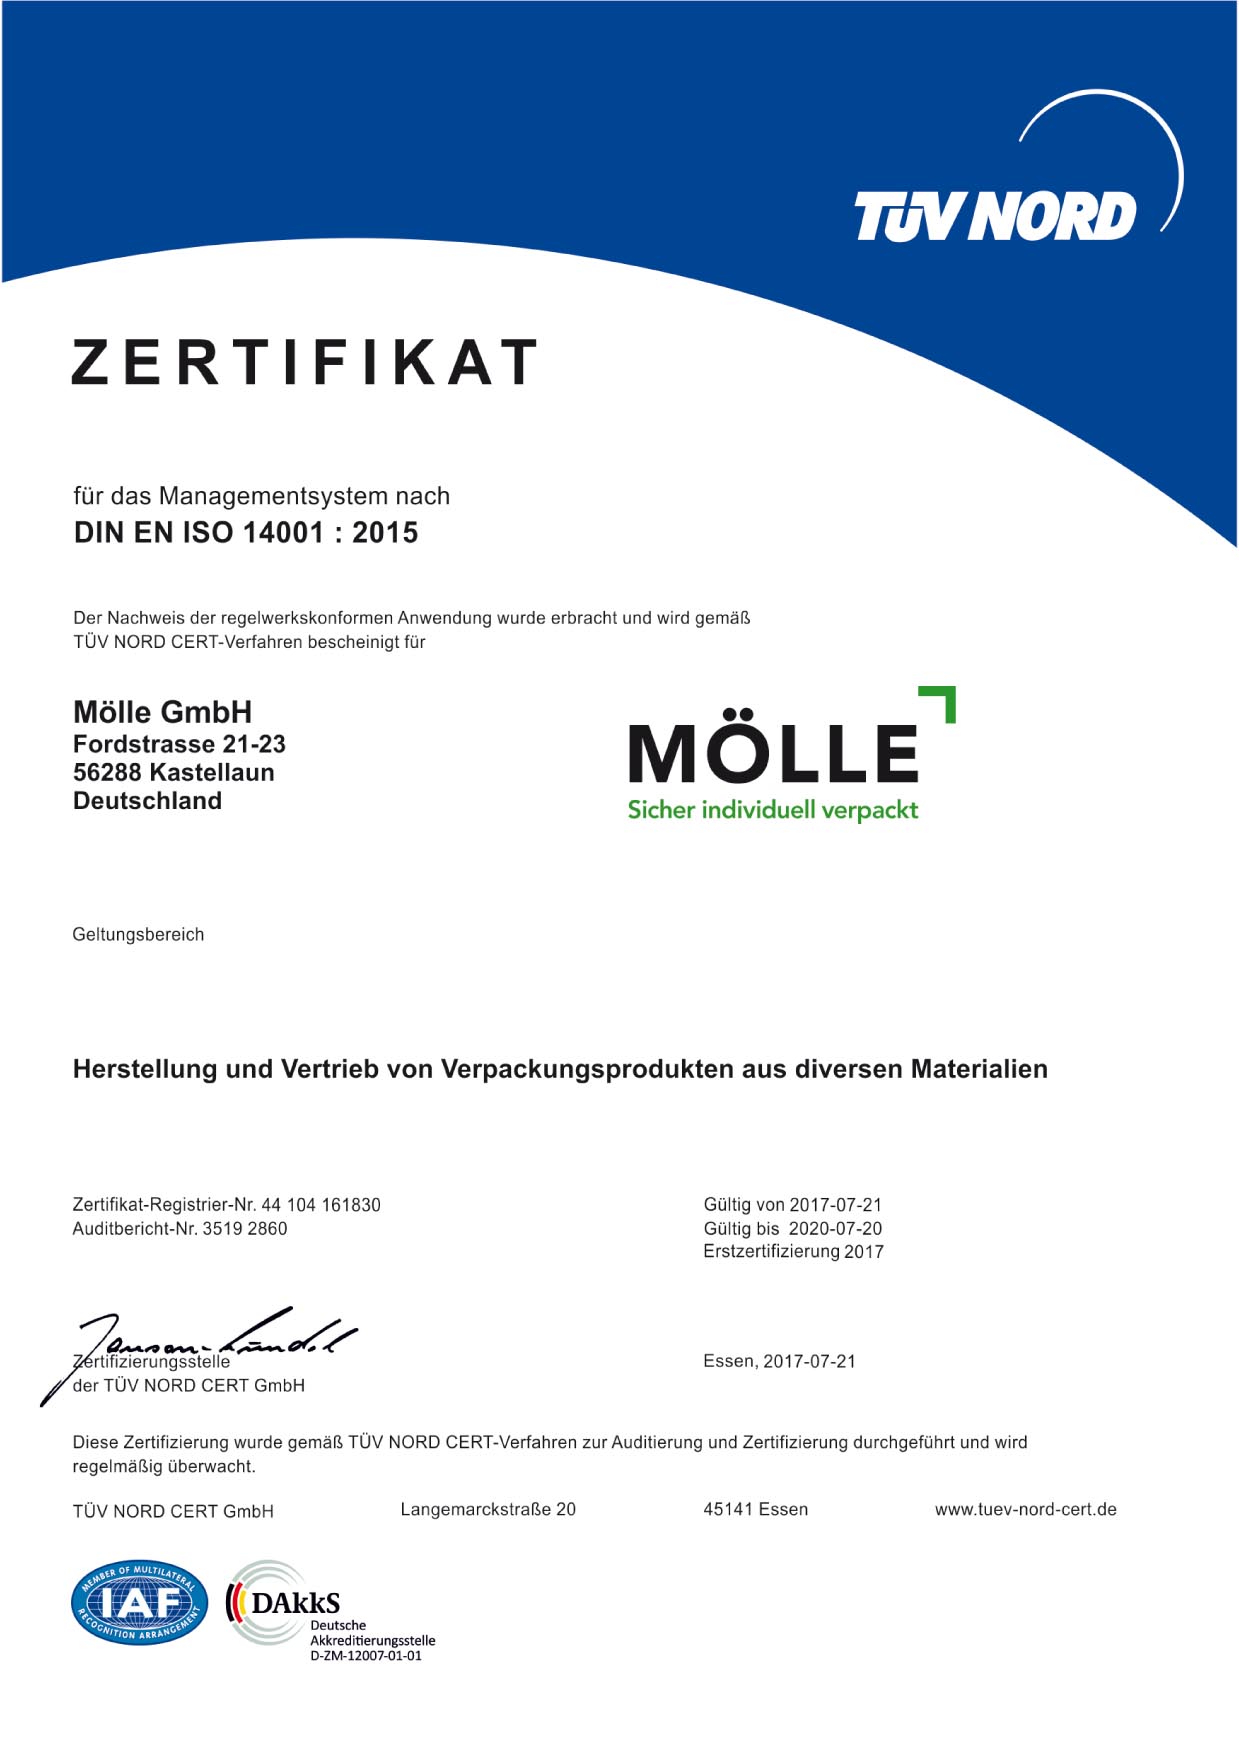 Moelle GmbH - Transportschutz